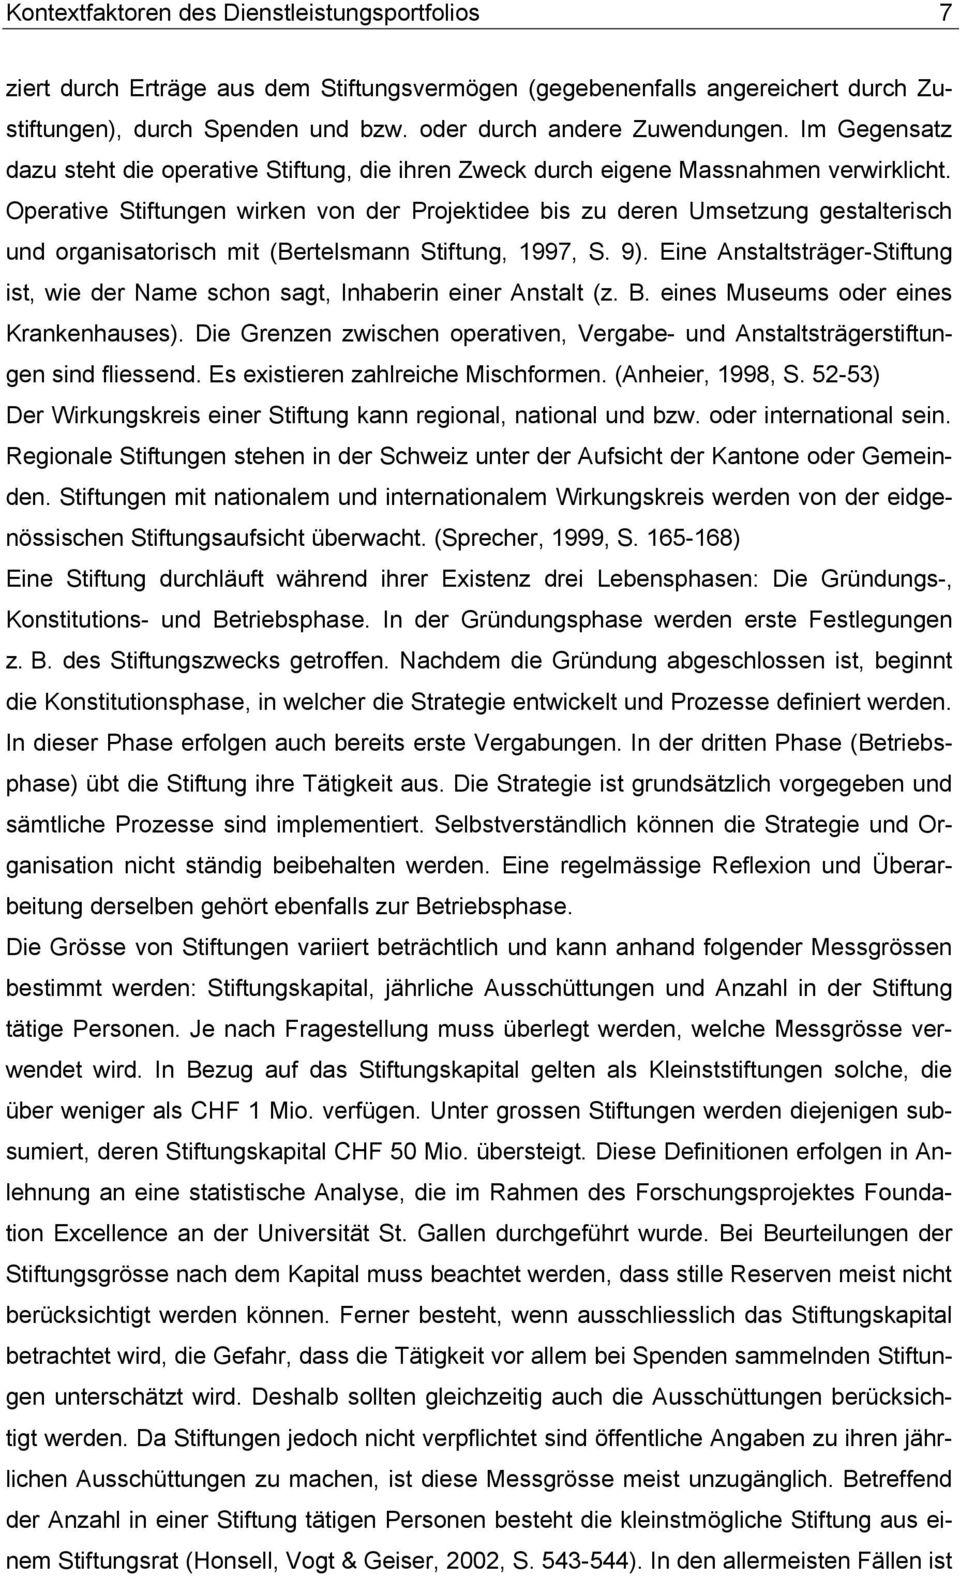 Operative Stiftungen wirken von der Projektidee bis zu deren Umsetzung gestalterisch und organisatorisch mit (Bertelsmann Stiftung, 1997, S. 9).